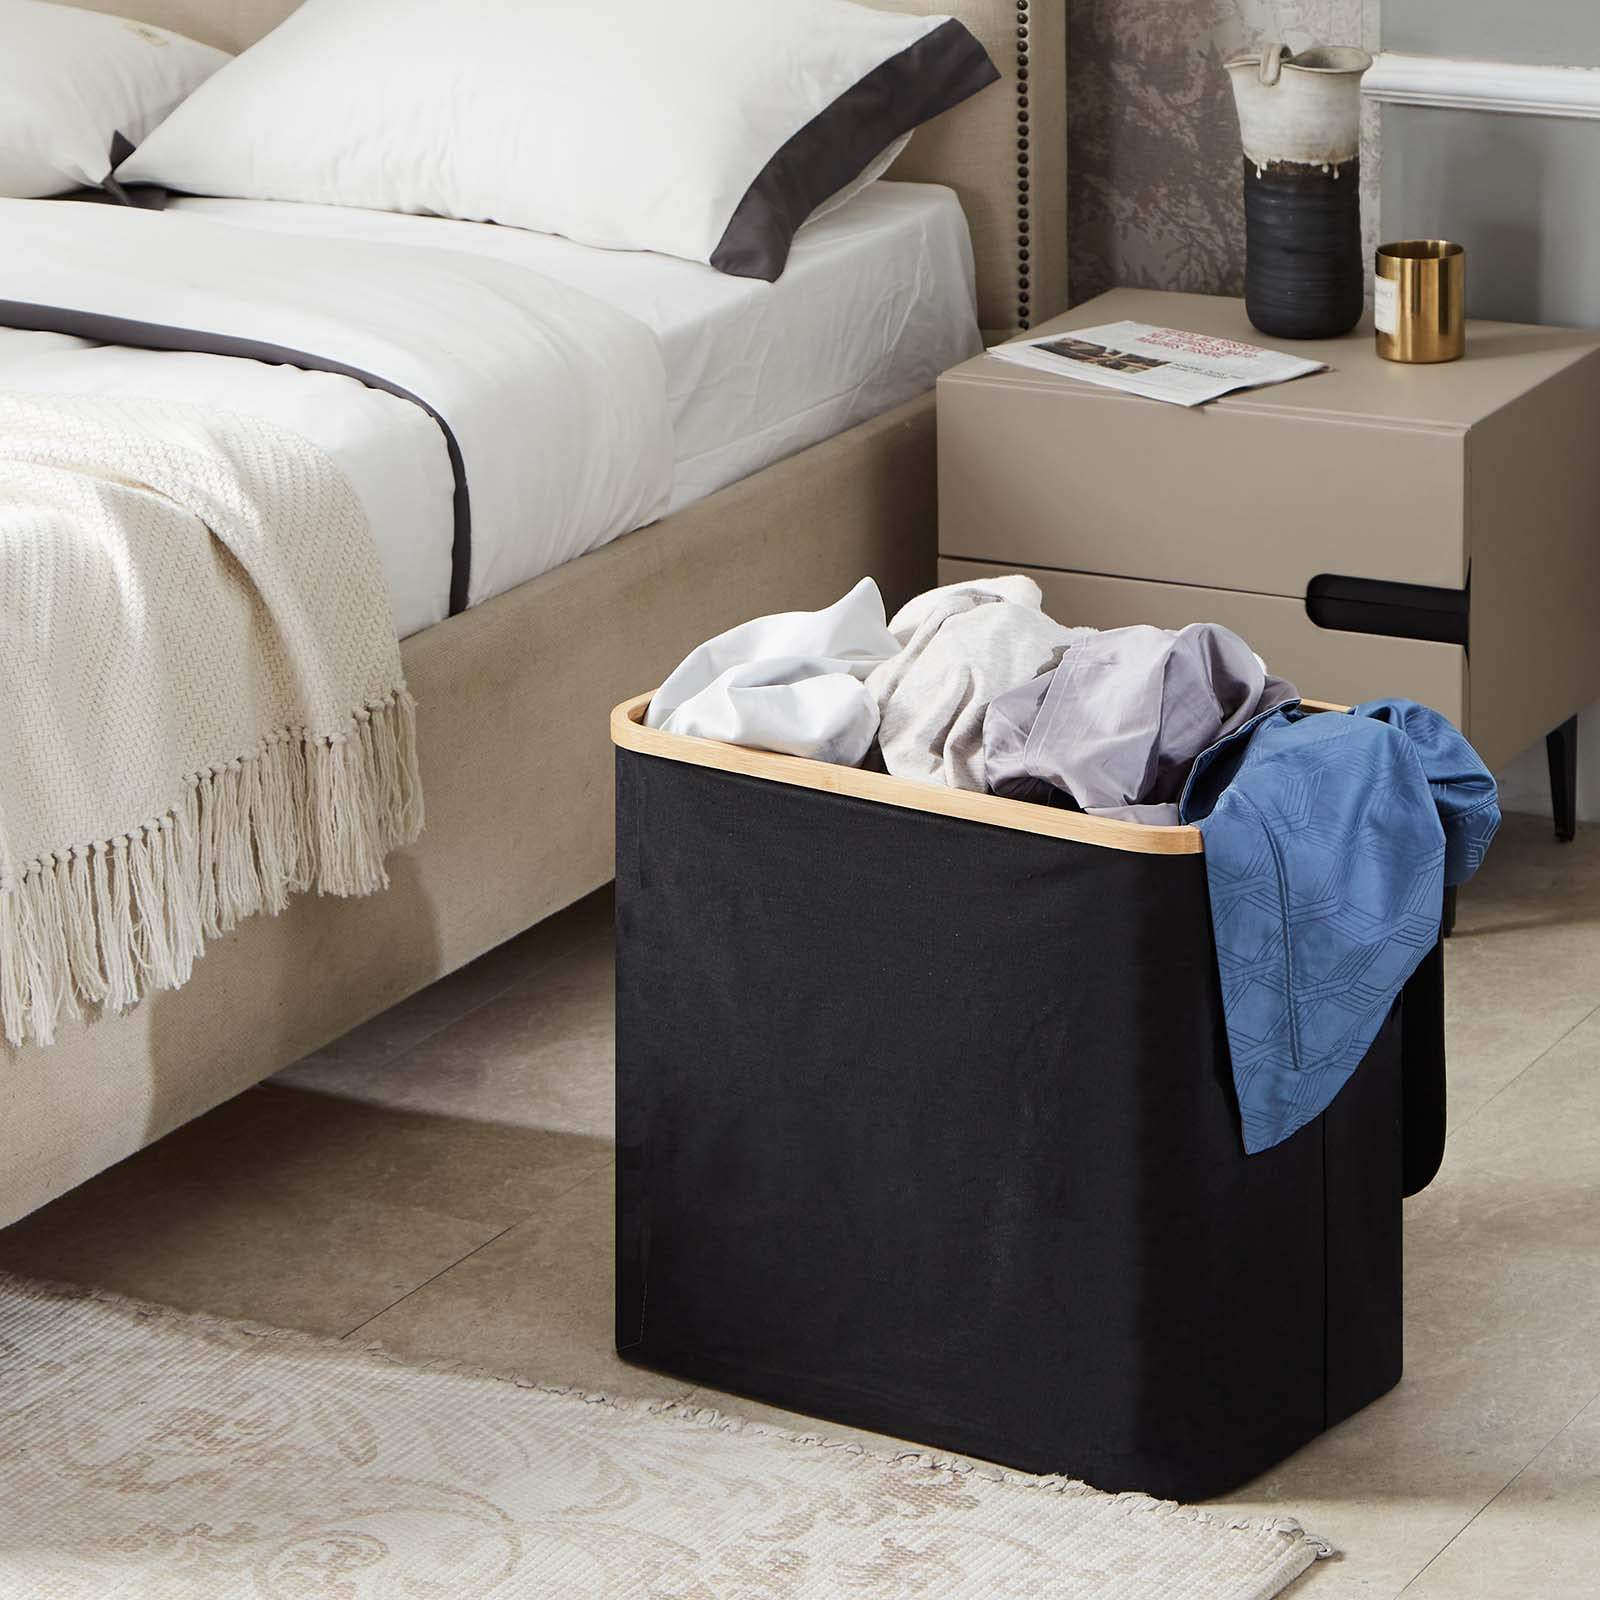 90L Zusammenklappbarer Schmutzwäschekorb Großer Wäschekorb mit Deckel und Griff Faltbarer Aufbewahrungskorb für Schlafzimmer und Badezimmer